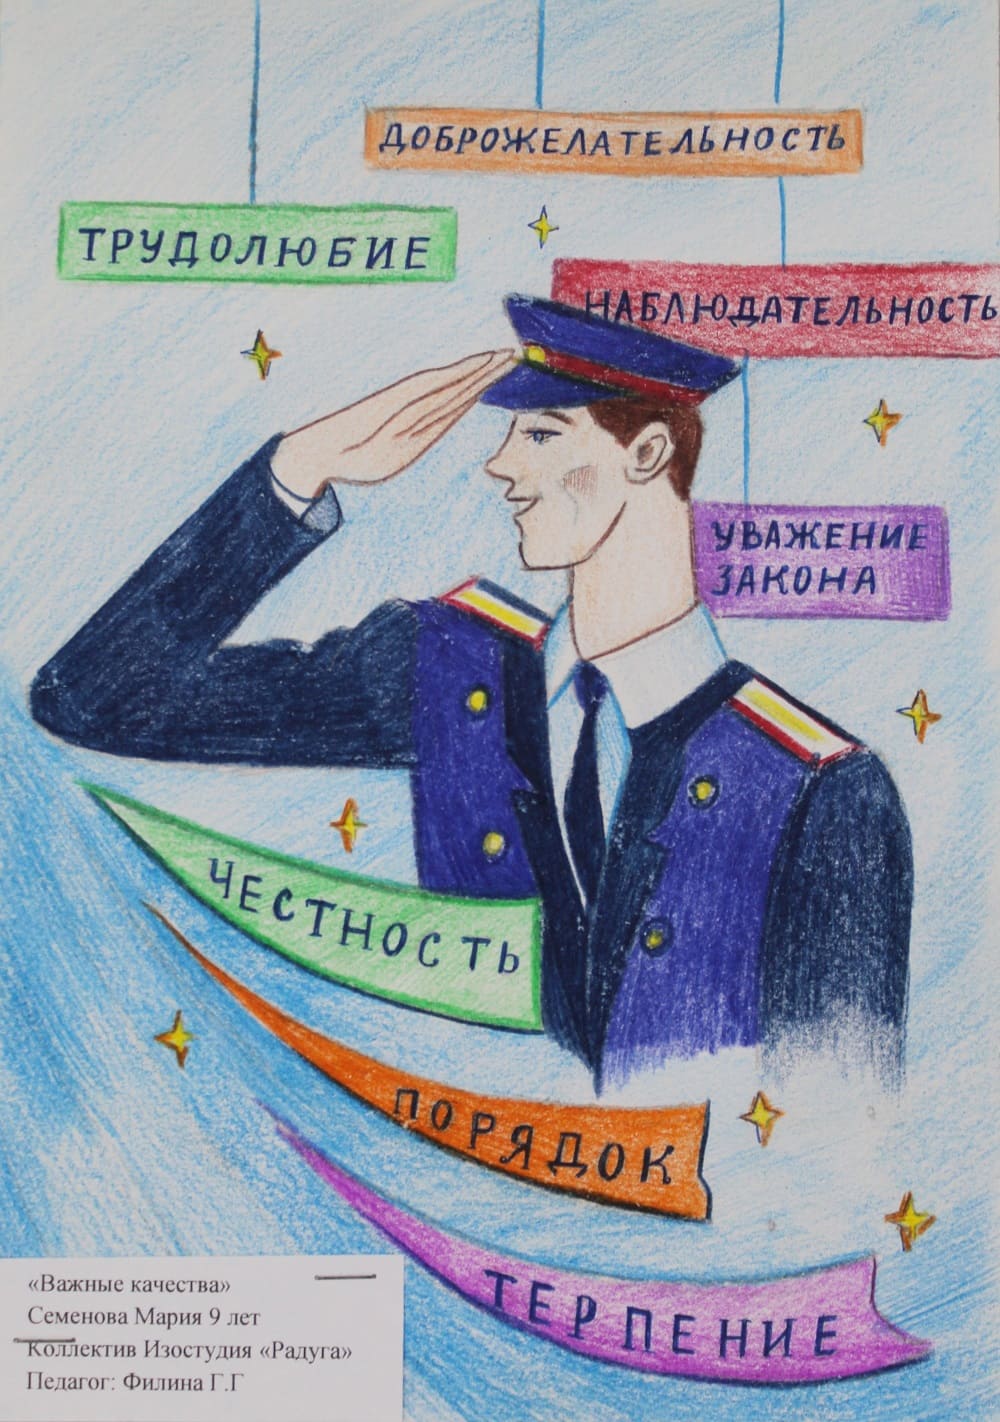 Серпухов подвели итоги конкурса детского рисунка «Участковый глазами детей»